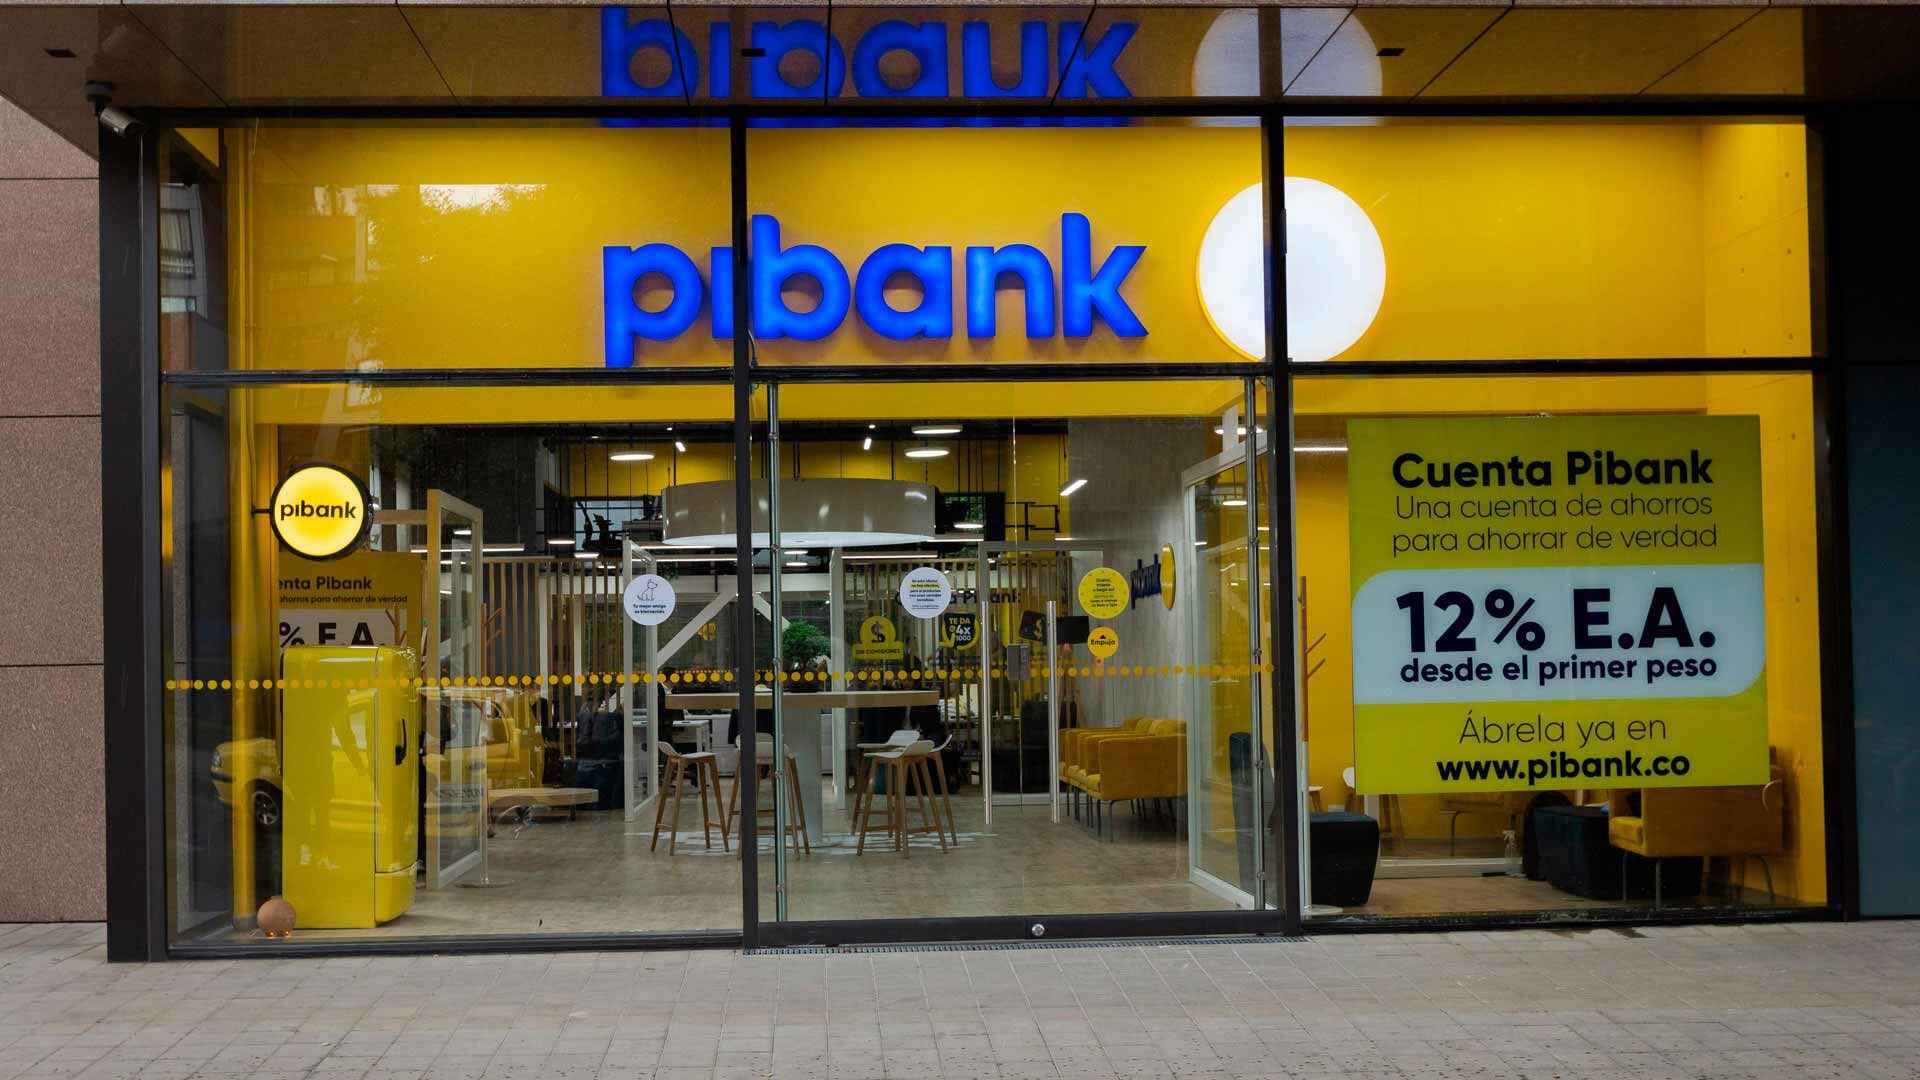 Foto de referencia de una oficina de Pibank de Bogotá